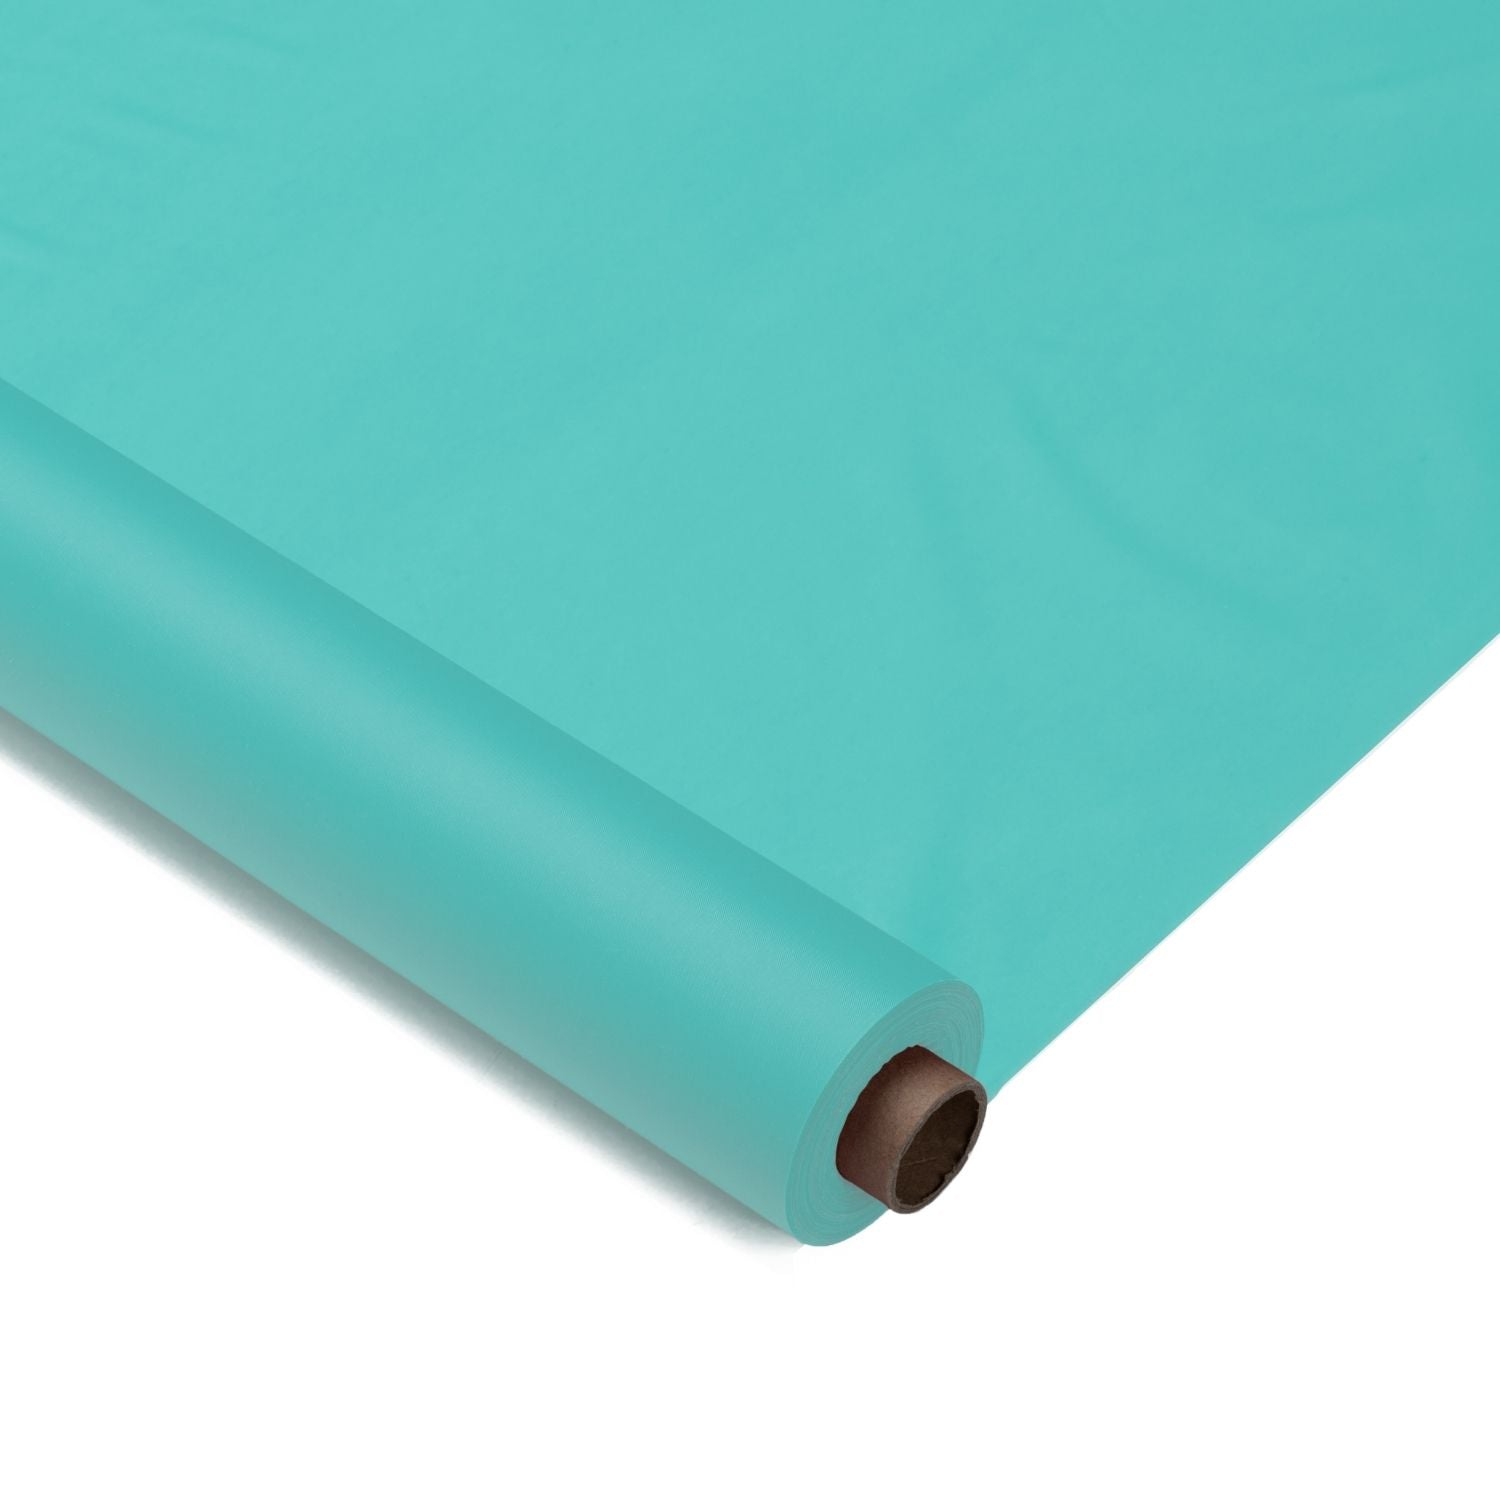 40 In. X 300 Ft. Premium Aqua Plastic Table Roll | 4 Pack